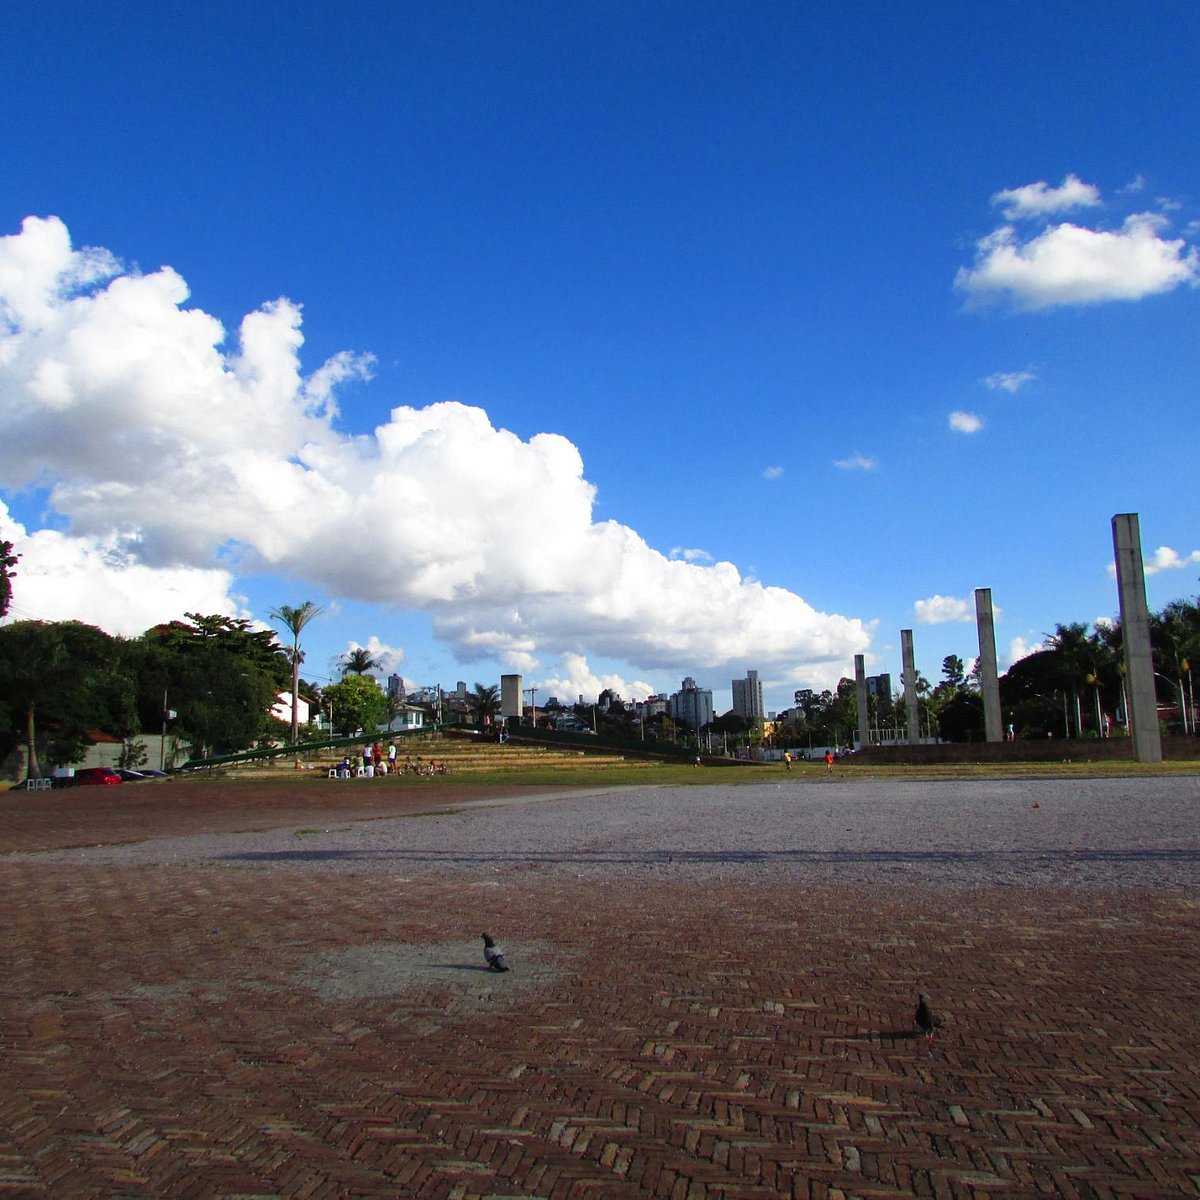 Pampulha: região moderna de grande destaque em Belo Horizonte